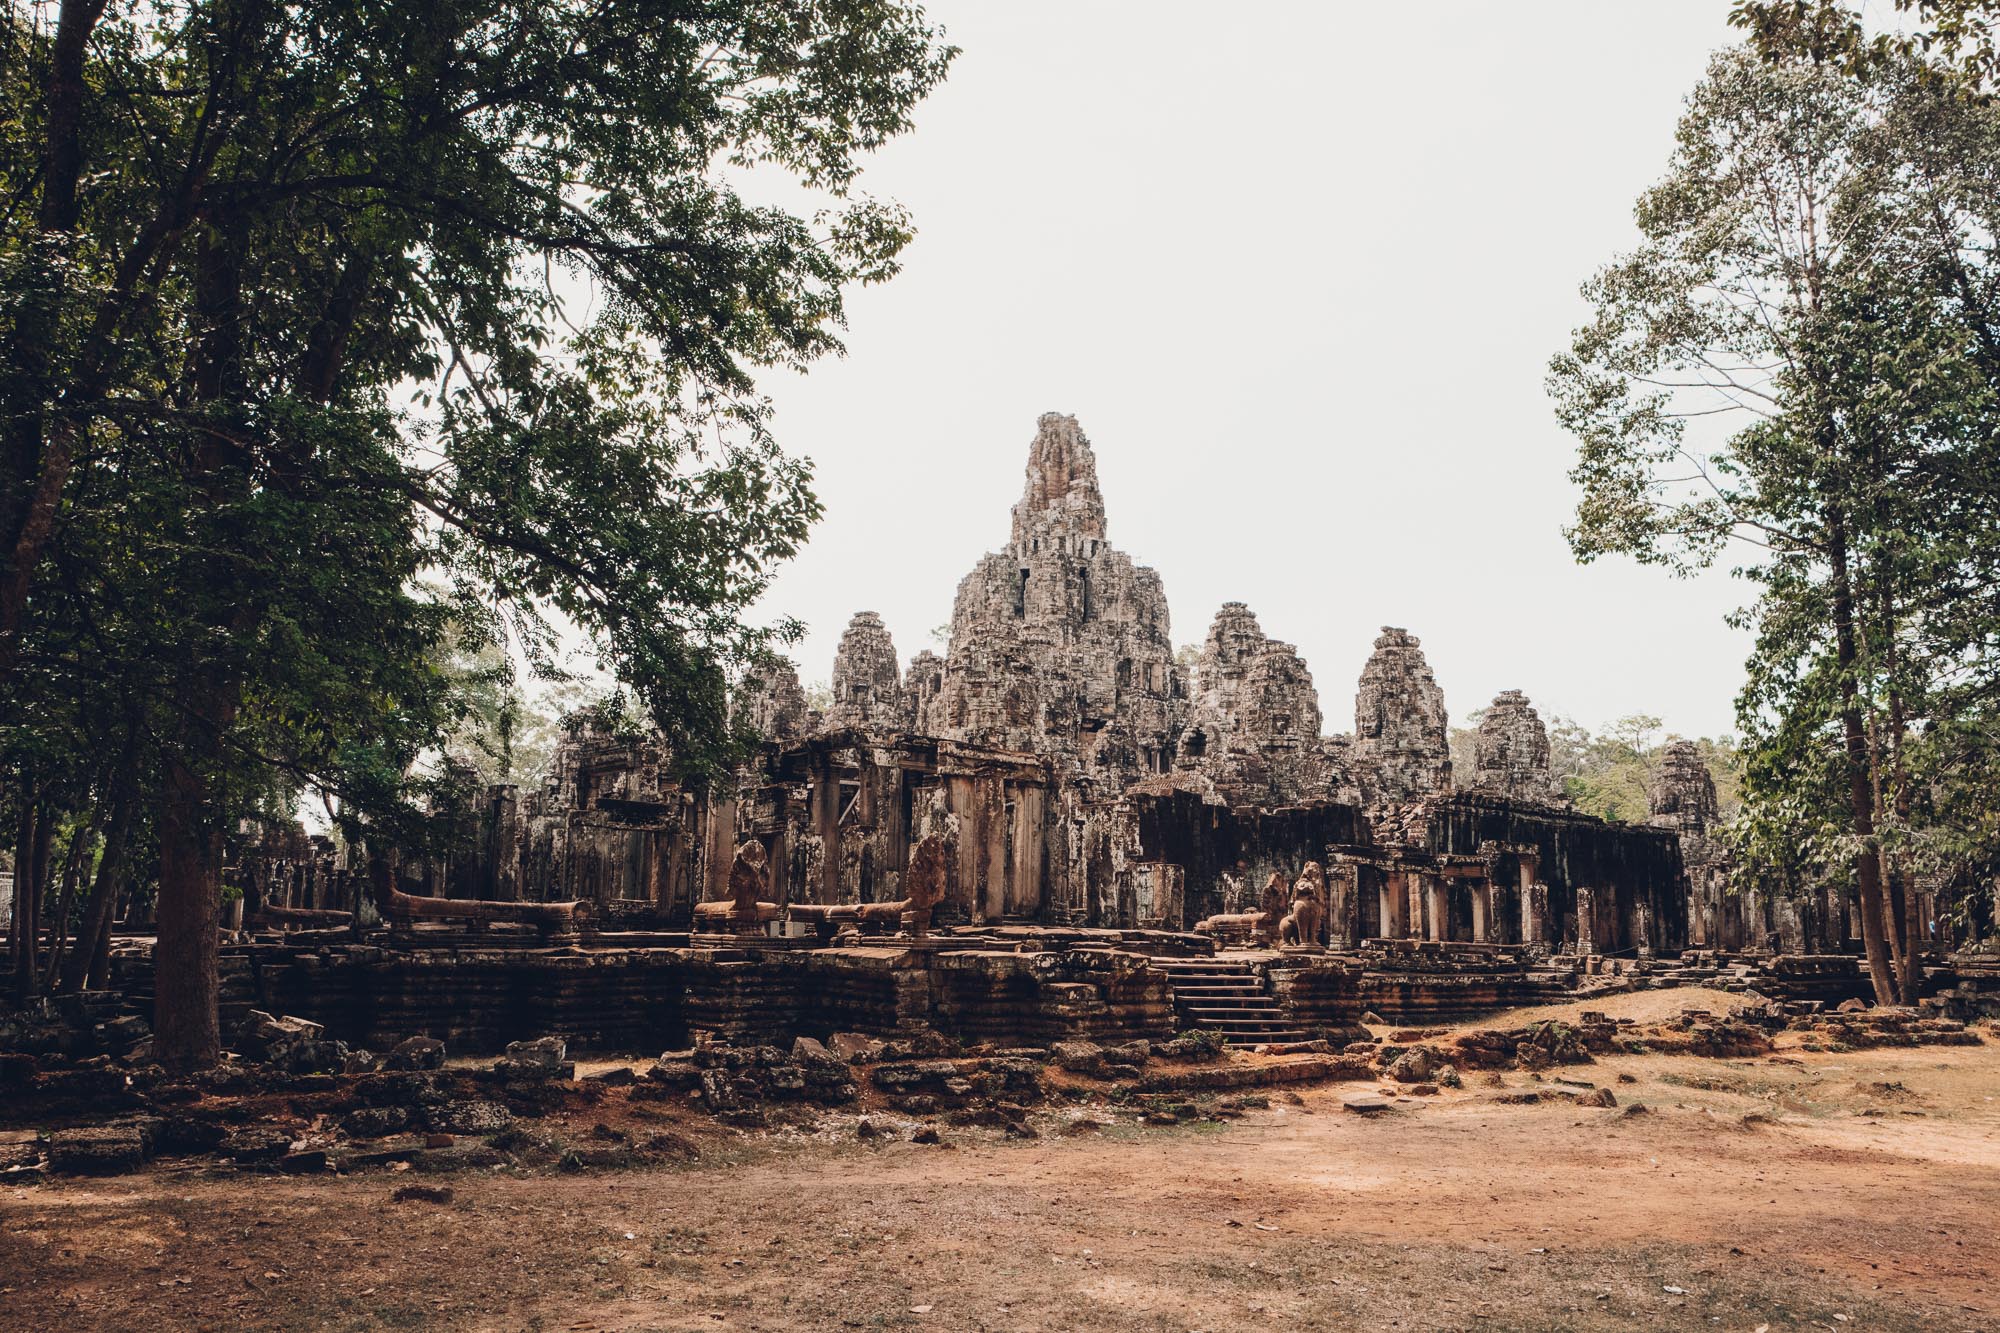 Bayon temple in Angkor Wat Cambodia